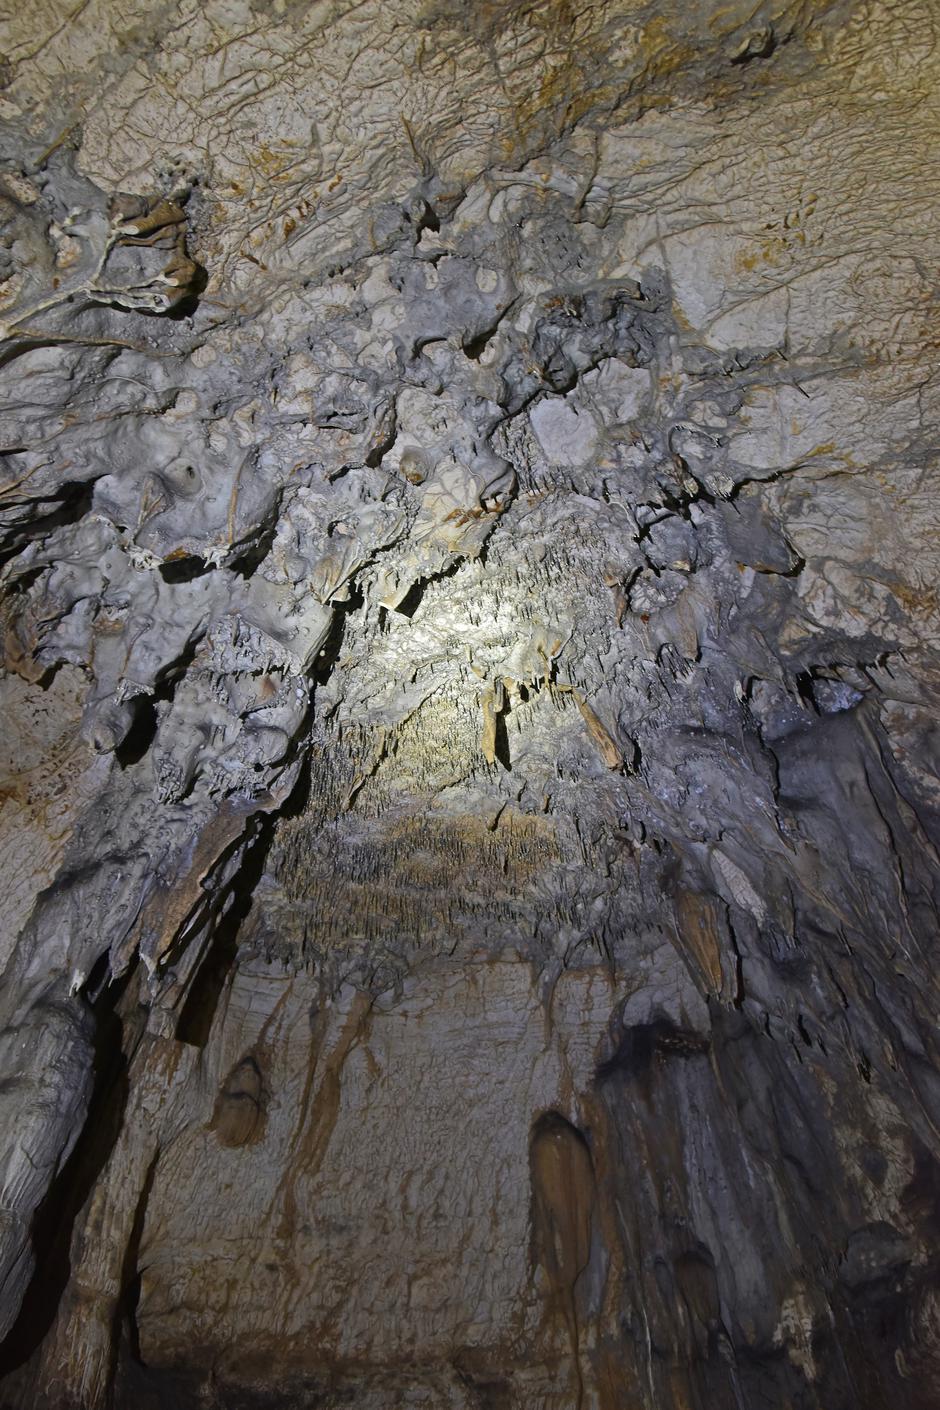 Romualdova pećina